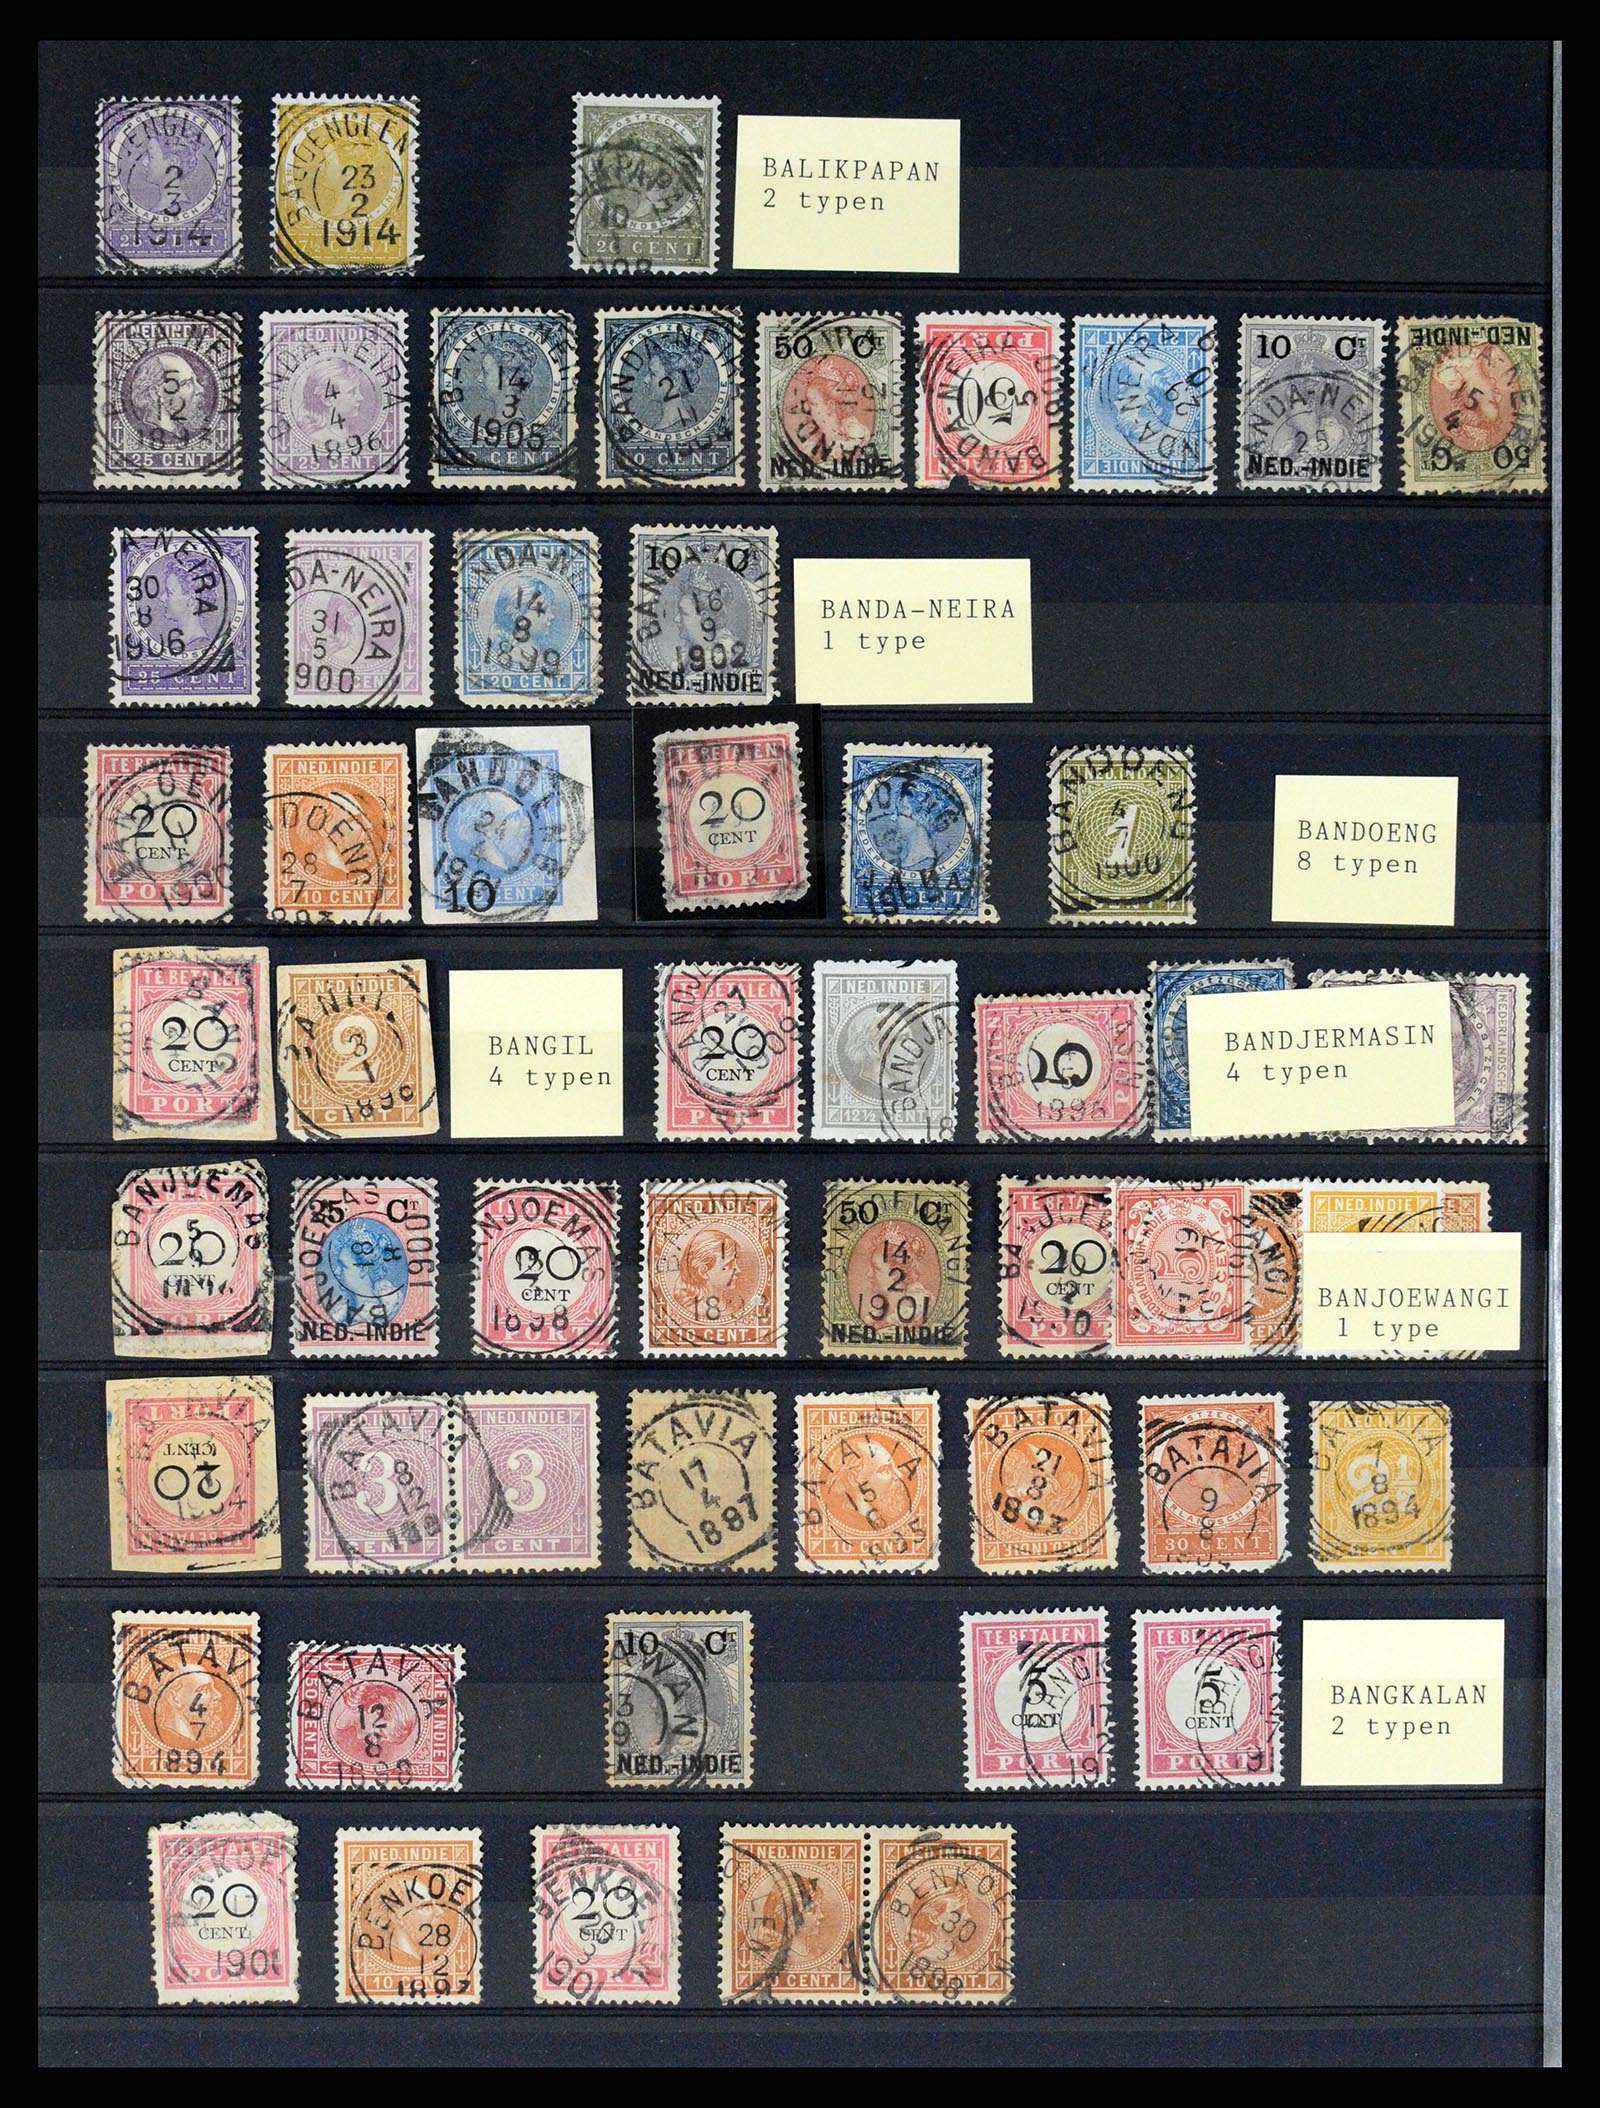 36512 080 - Stamp collection 36512 Nederlands Indië stempels 1872-1930.